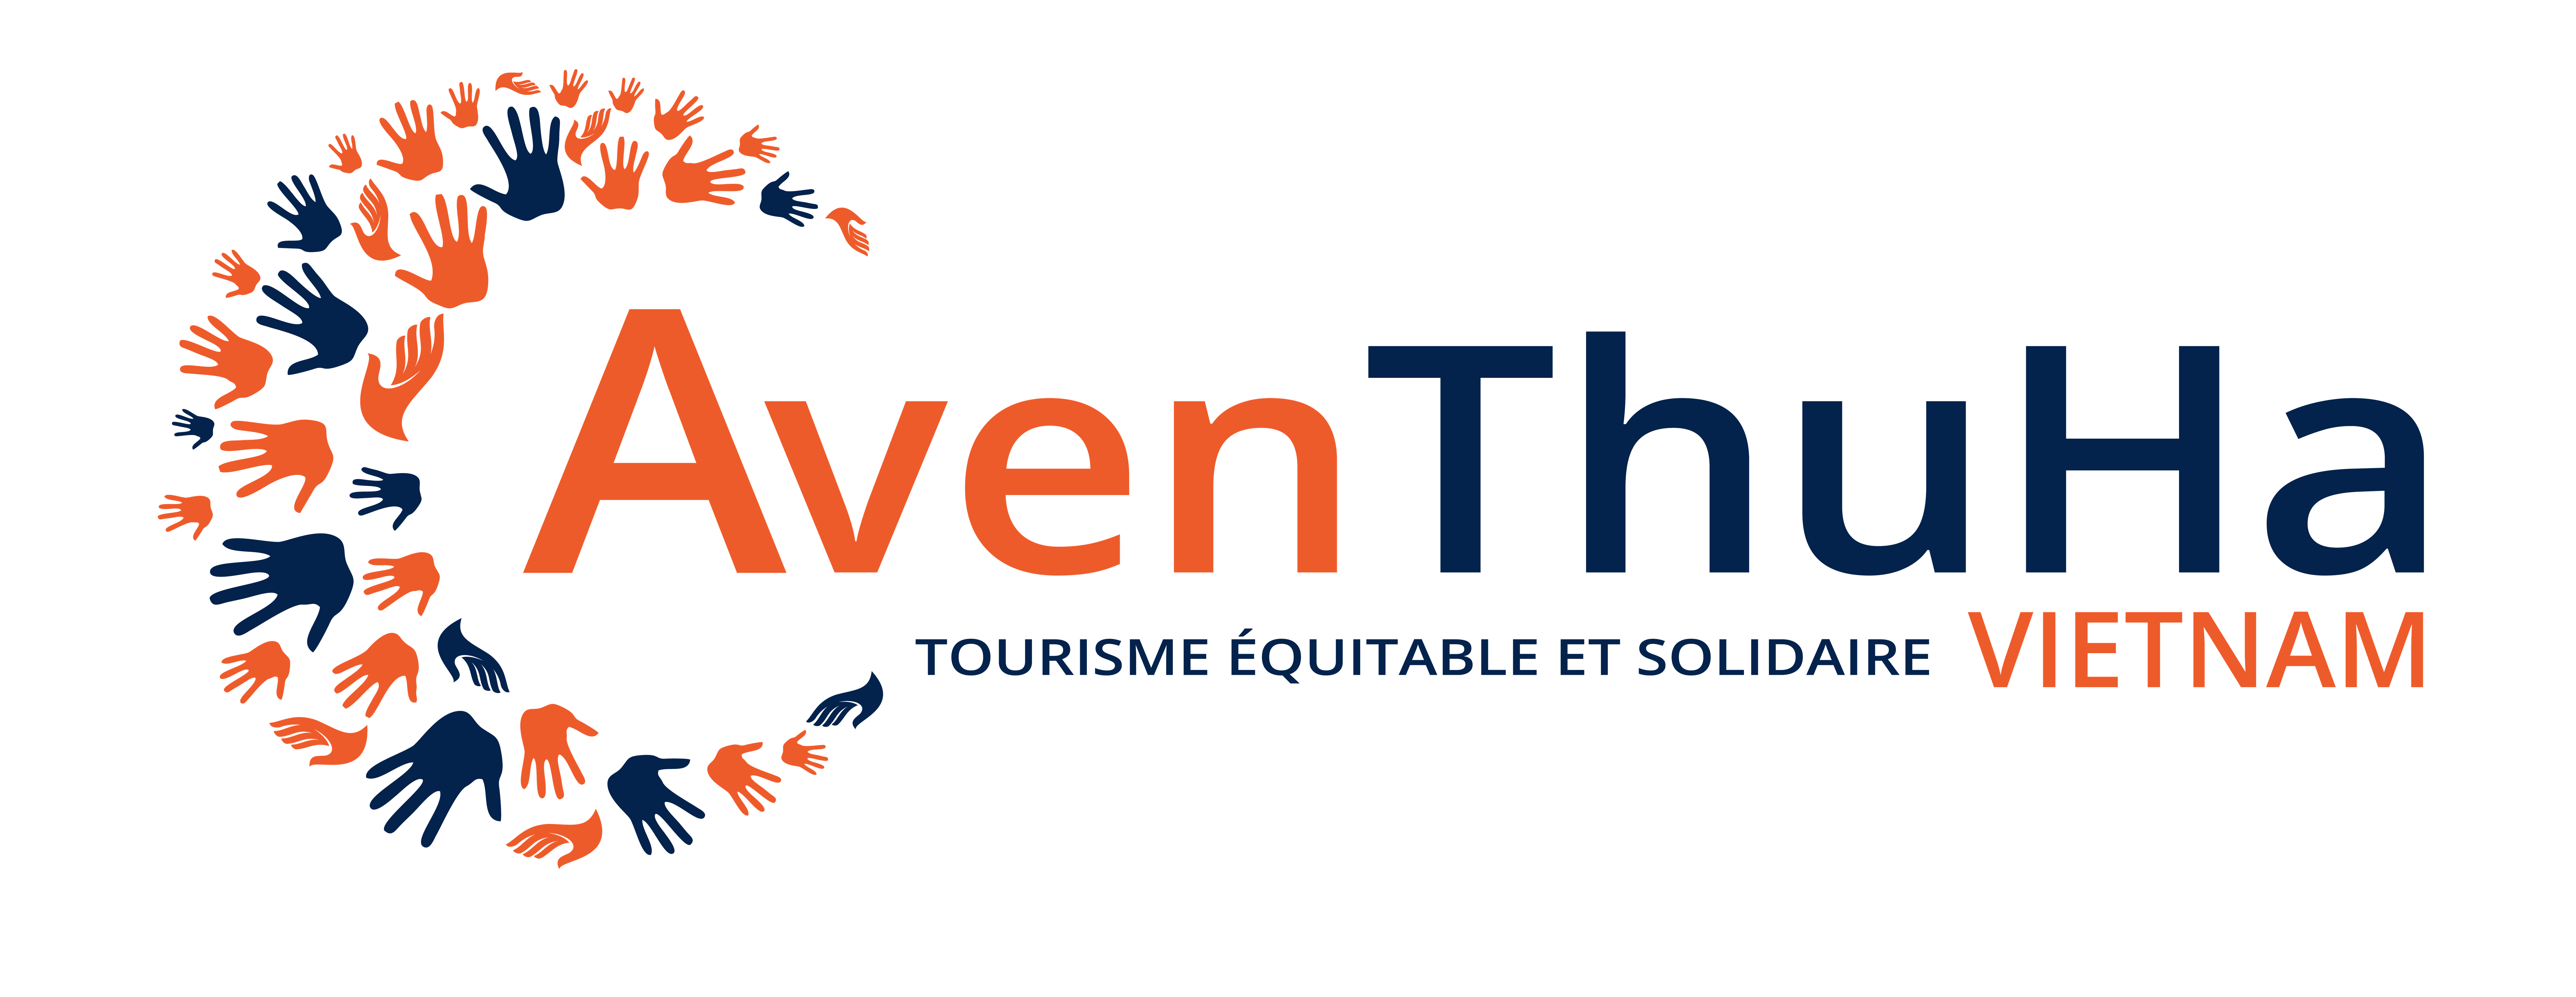 AvenThuHa Vietnam - Tourisme équitable et solidaire au Vietnam